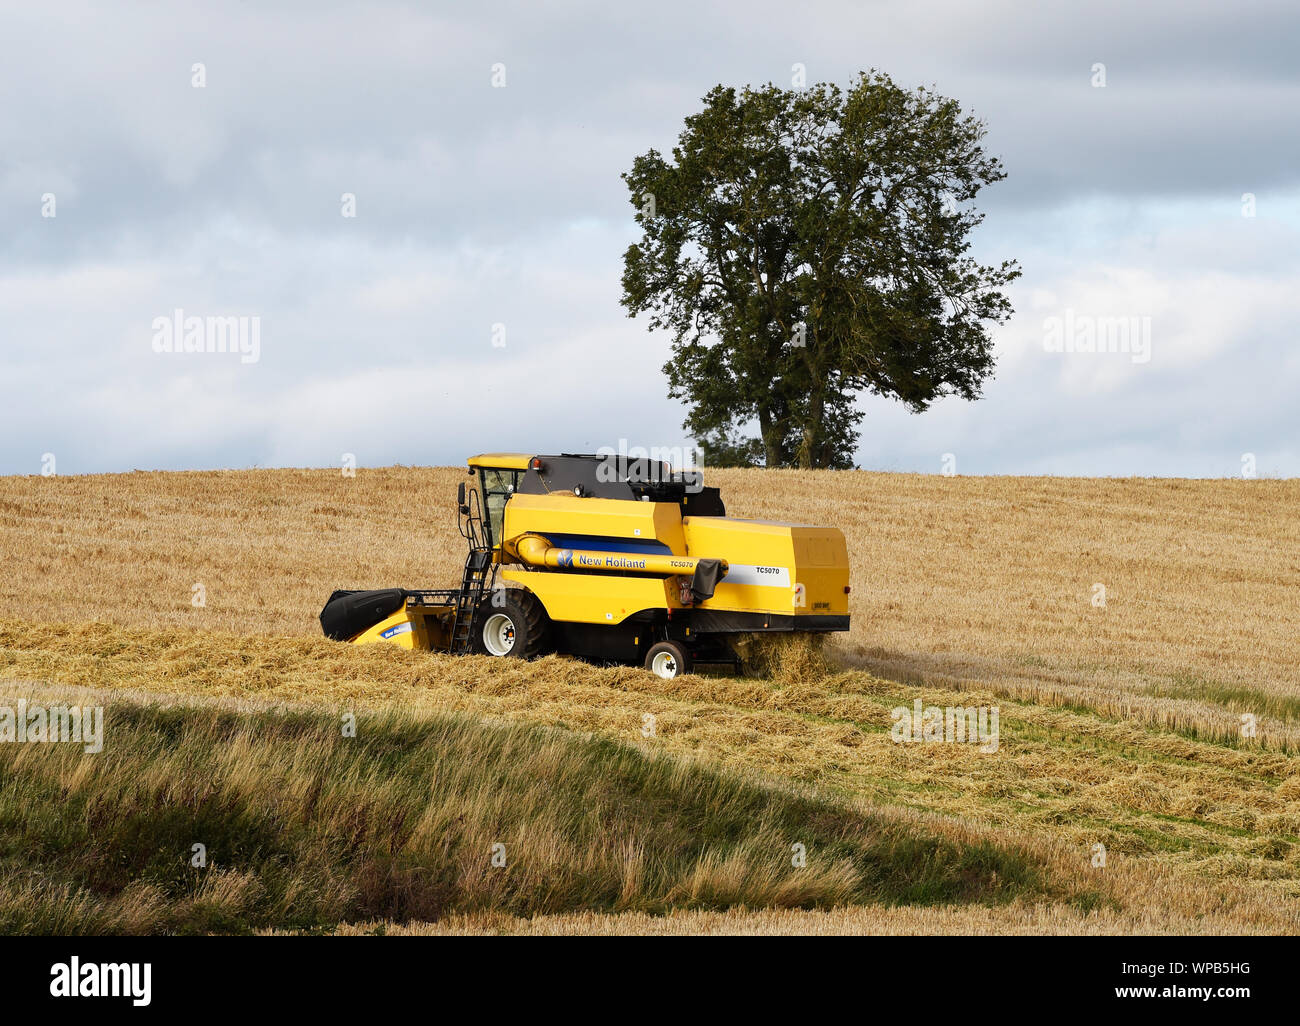 New Holland mietitrebbia lavorando in un campo nei pressi di Smailholm, Scottish Borders, Scozia. Foto Stock